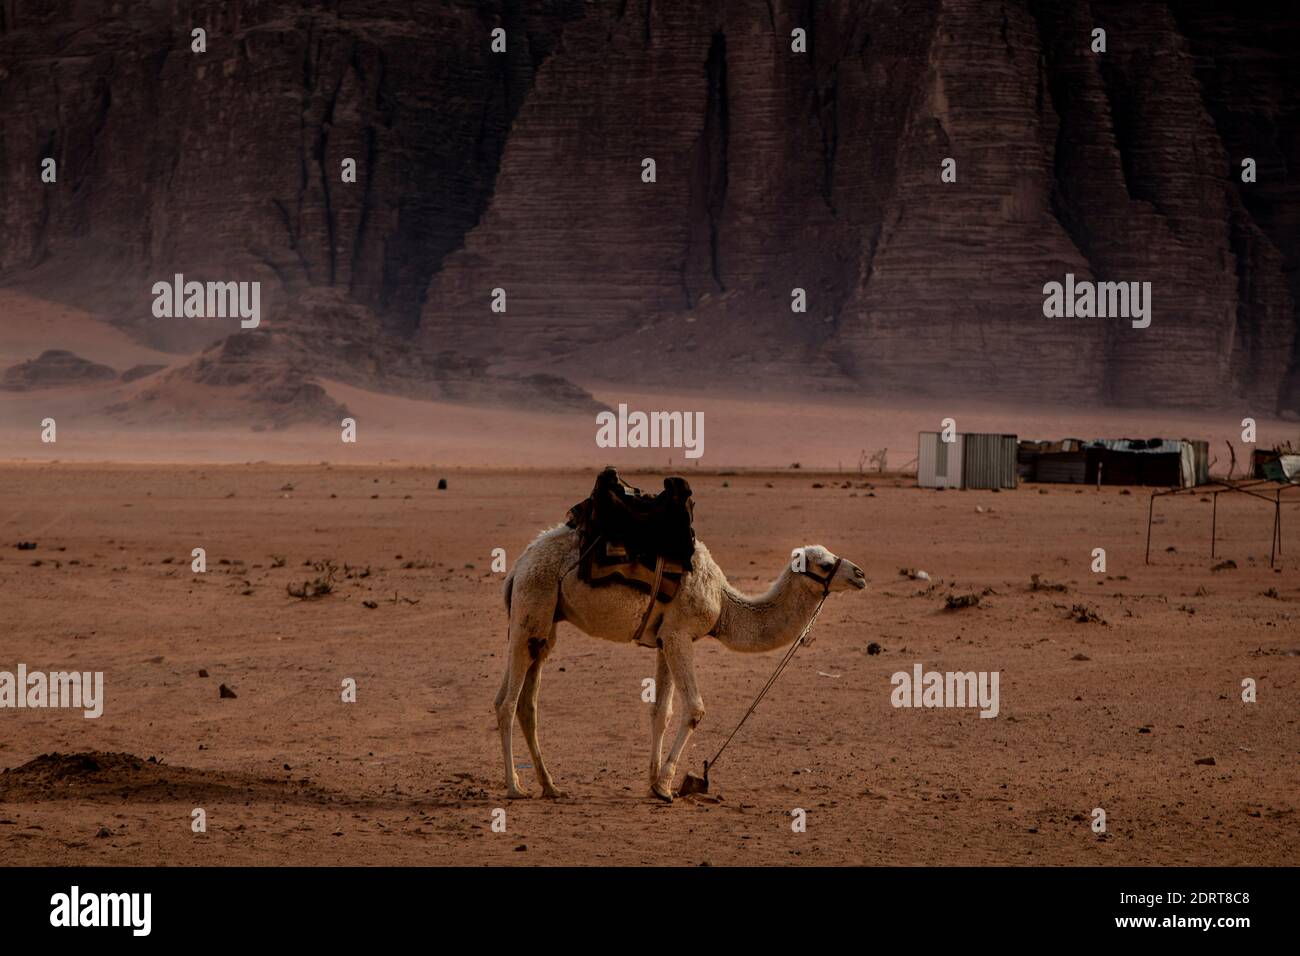 Camels in a bedouins village in Wadi Rum desert, Jordan. Stock Photo